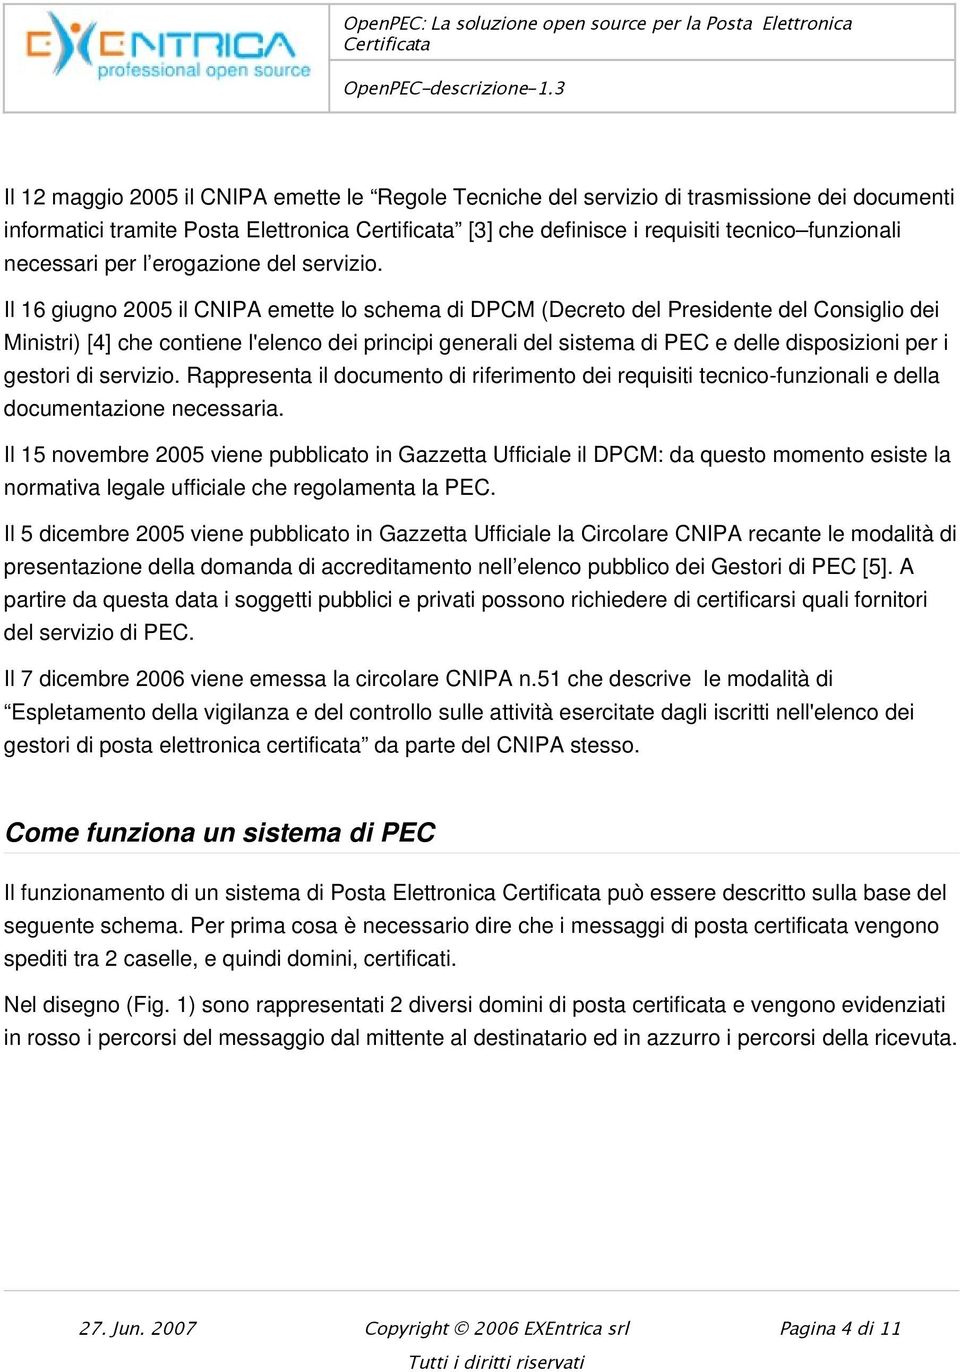 Il 16 giugno 2005 il CNIPA emette lo schema di DPCM (Decreto del Presidente del Consiglio dei Ministri) [4] che contiene l'elenco dei principi generali del sistema di PEC e delle disposizioni per i